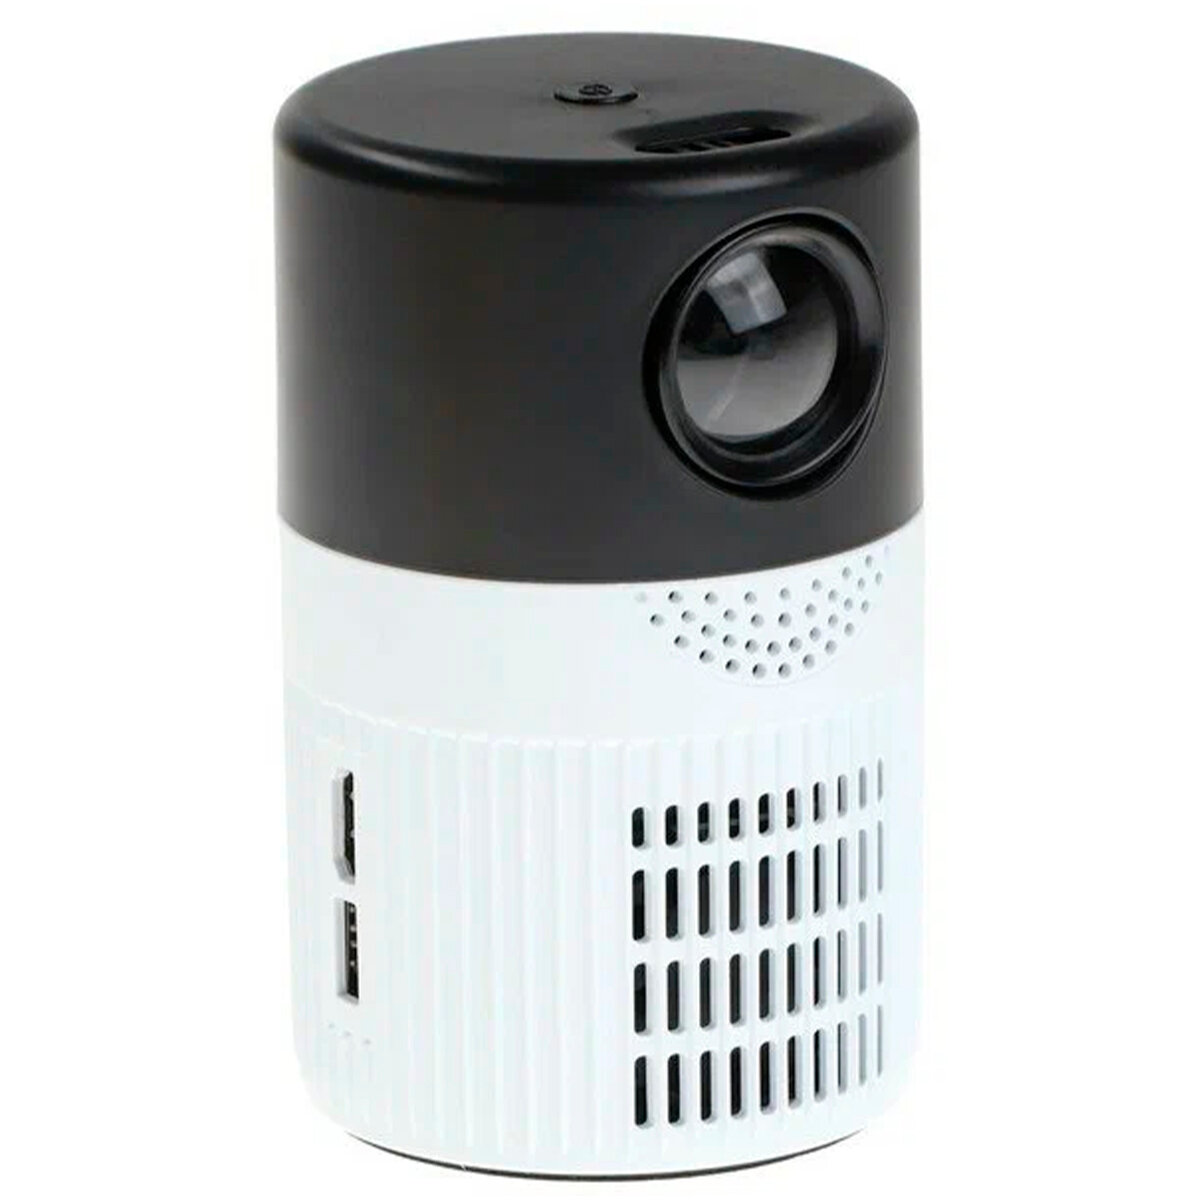 Проектор мультимедийный Unic T400 Basic / Портативный светодиодный видеопроектор Full HD 1080 LED 300 Lm / Домашний кинопроектор для фильмов и дома